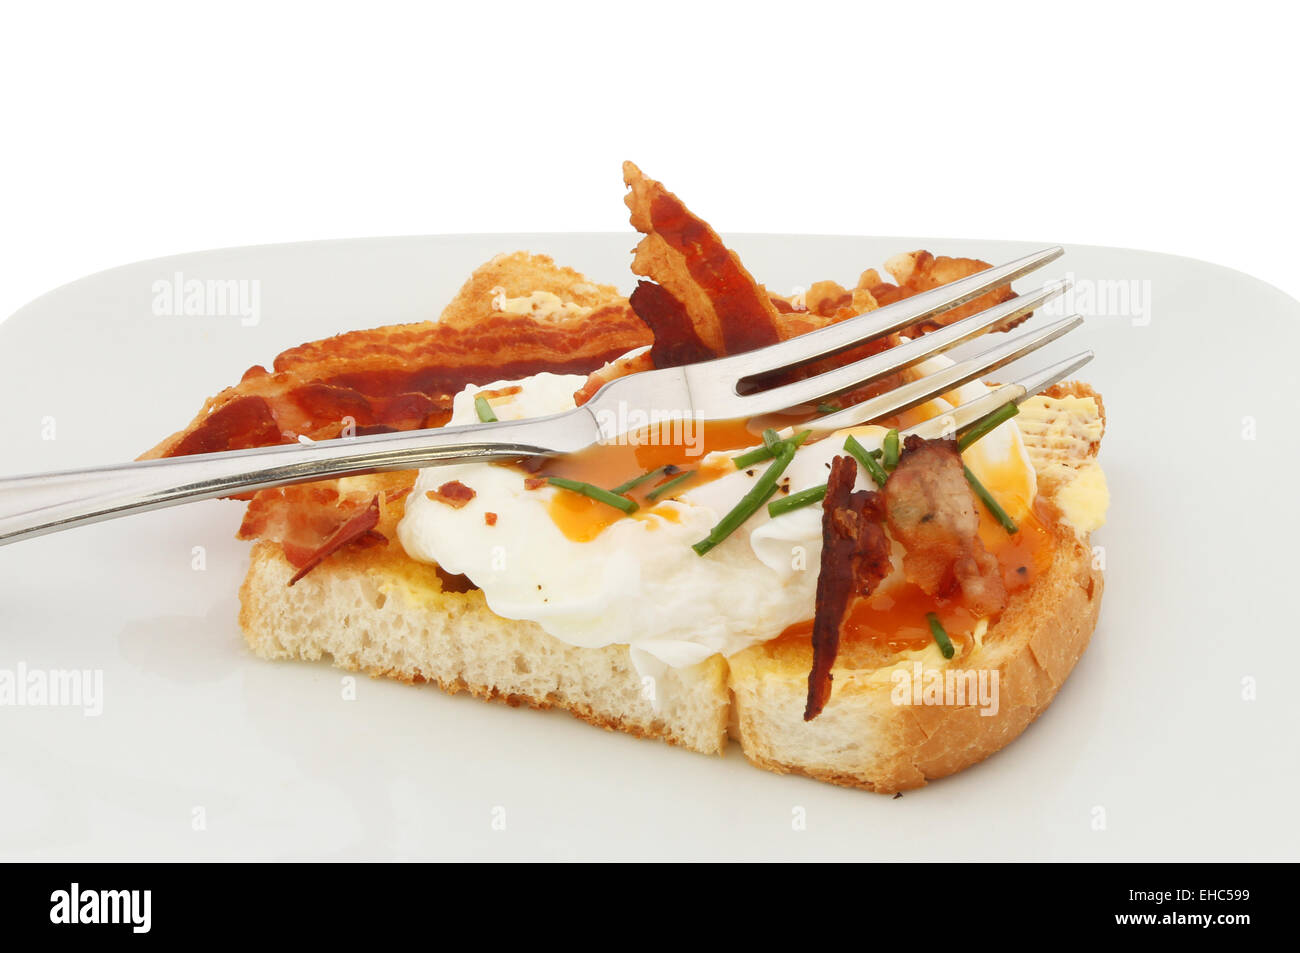 Primo piano di un uovo in camicia su toast con pancetta, erba cipollina e una forcella Foto Stock